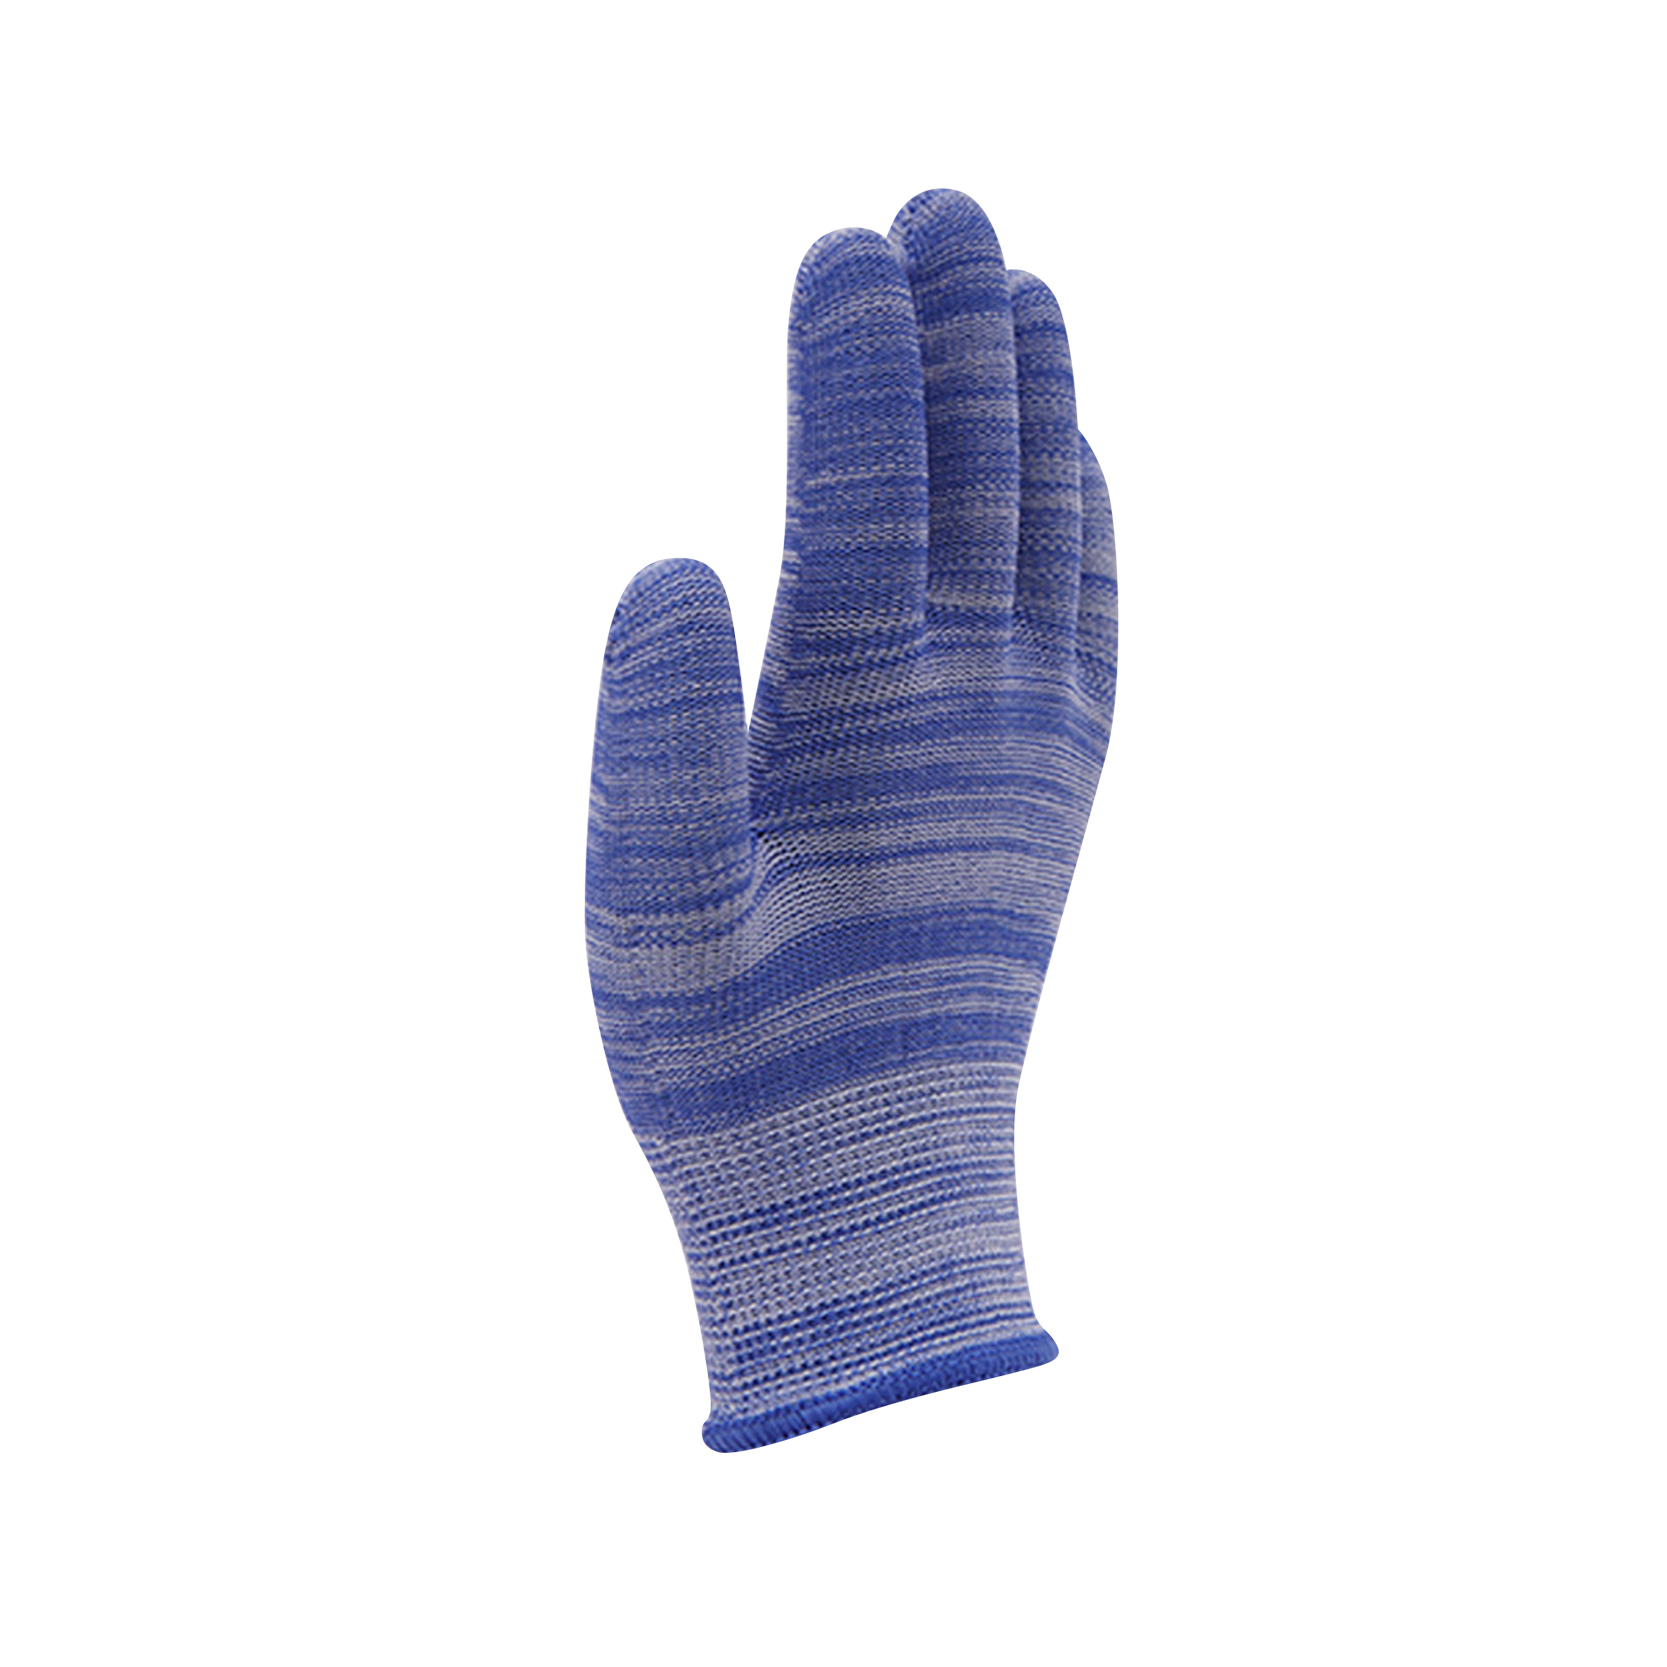 Mehrfarbige schützende String-Strickhandschuhe.Handschuhe mit normalem Gewicht.Gestrickte Baumwoll-Polyester-Handschuhe für Allgemein